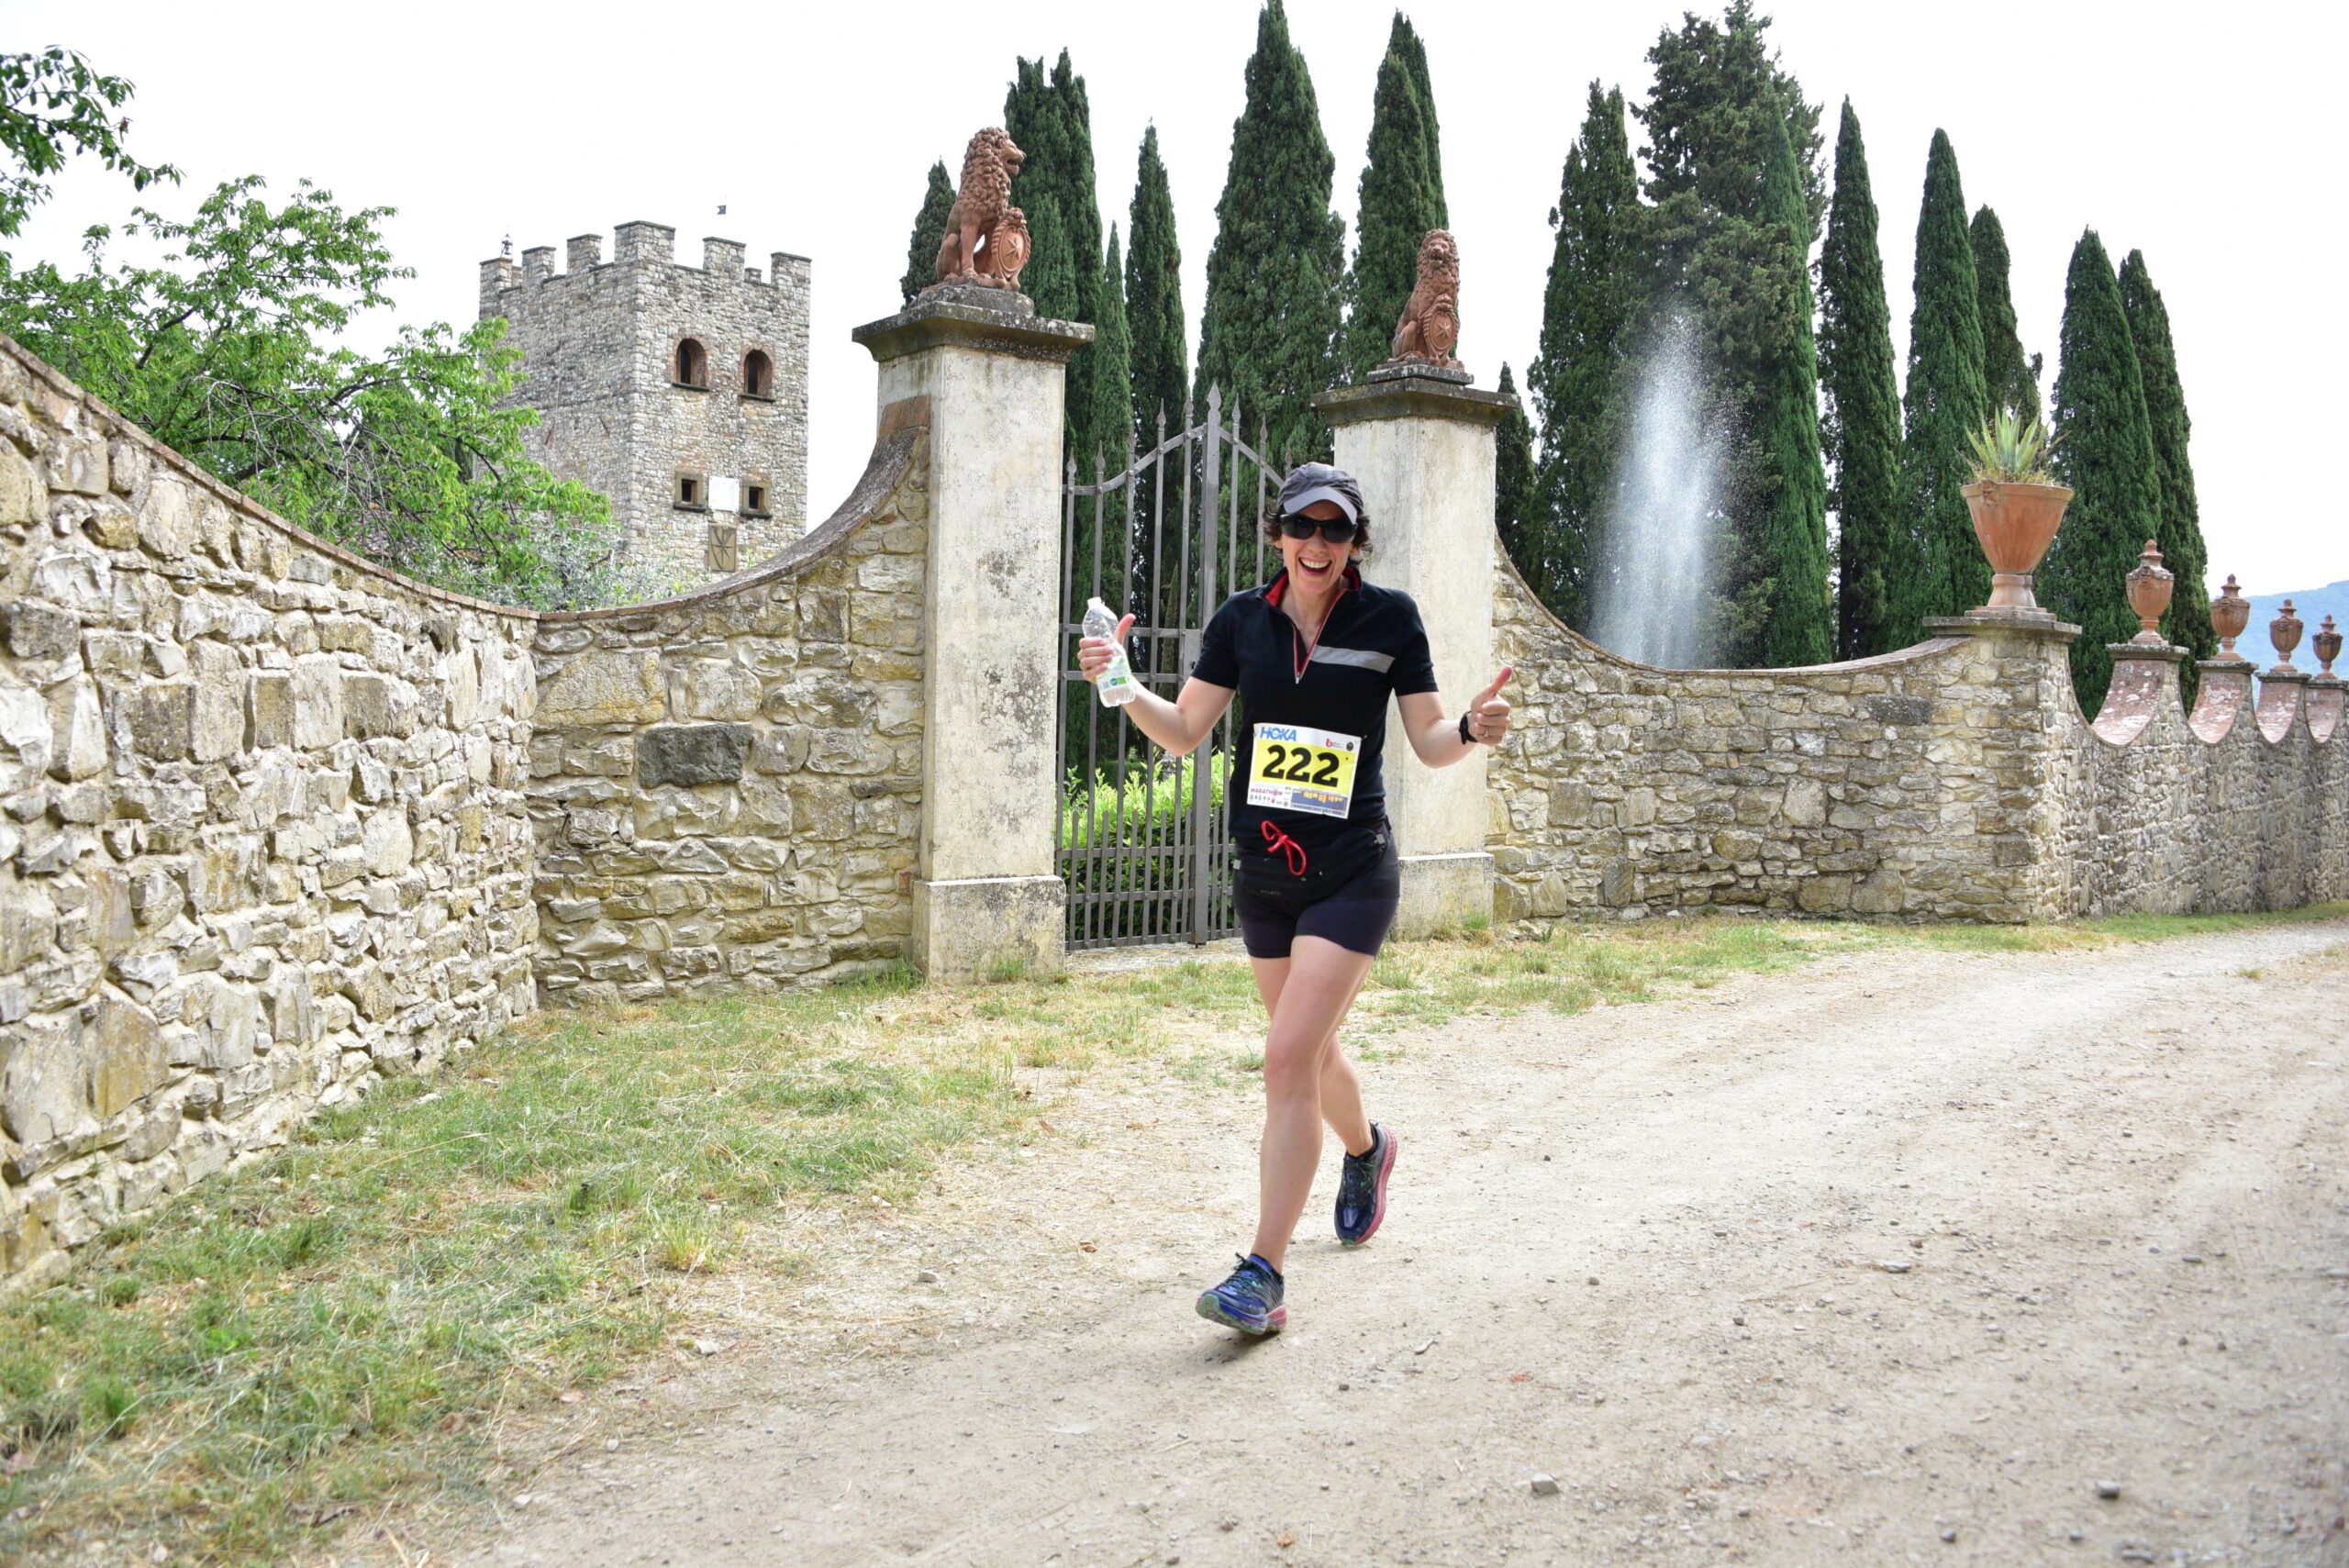 On 4 June 2023 the 5th edition of the Chianti Classico Marathon